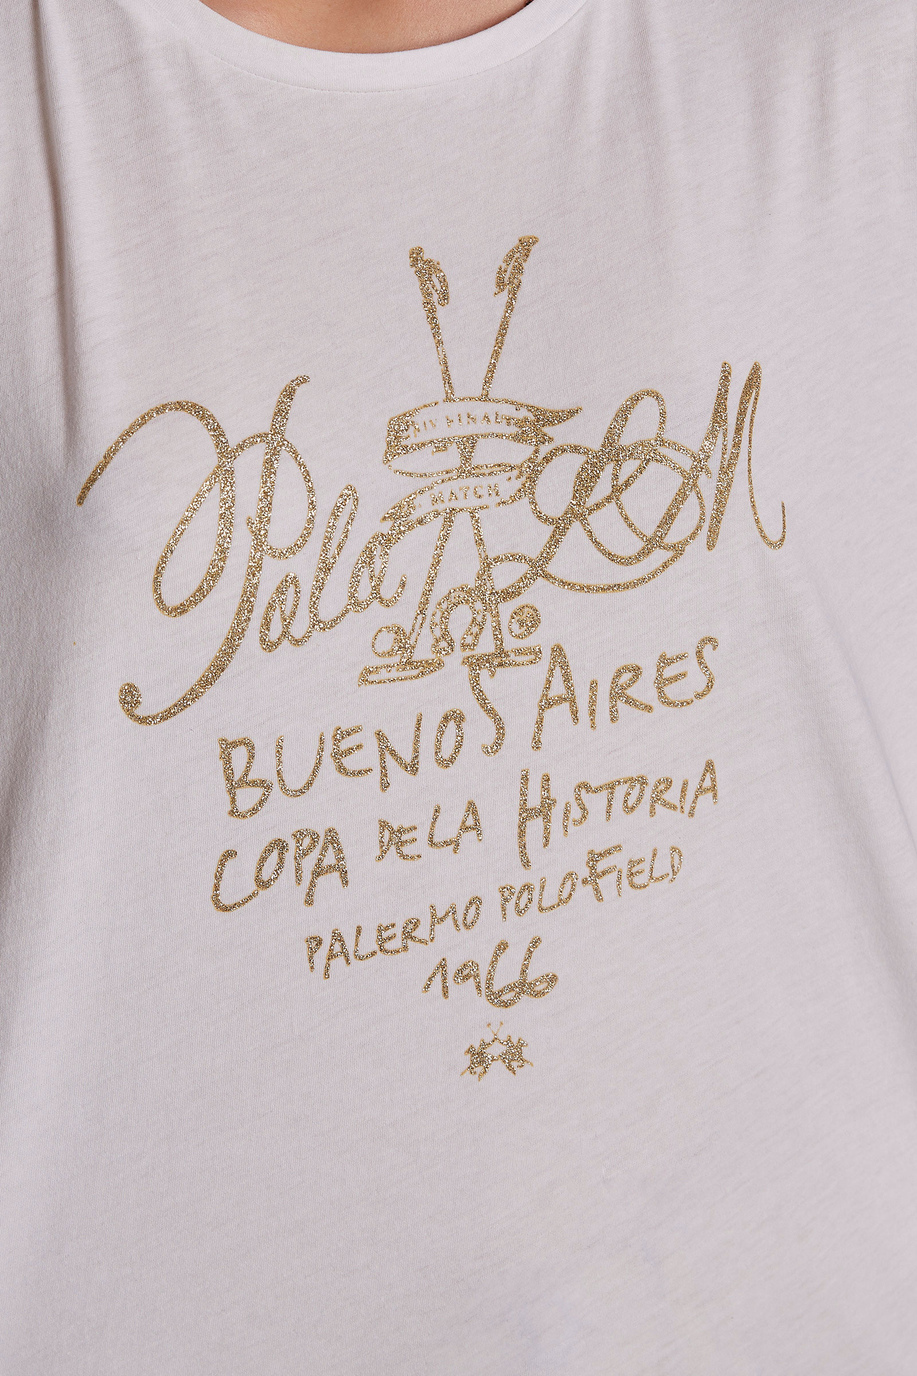 Camiseta de mujer de algodón 100 % con estampado del logotipo, corte regular